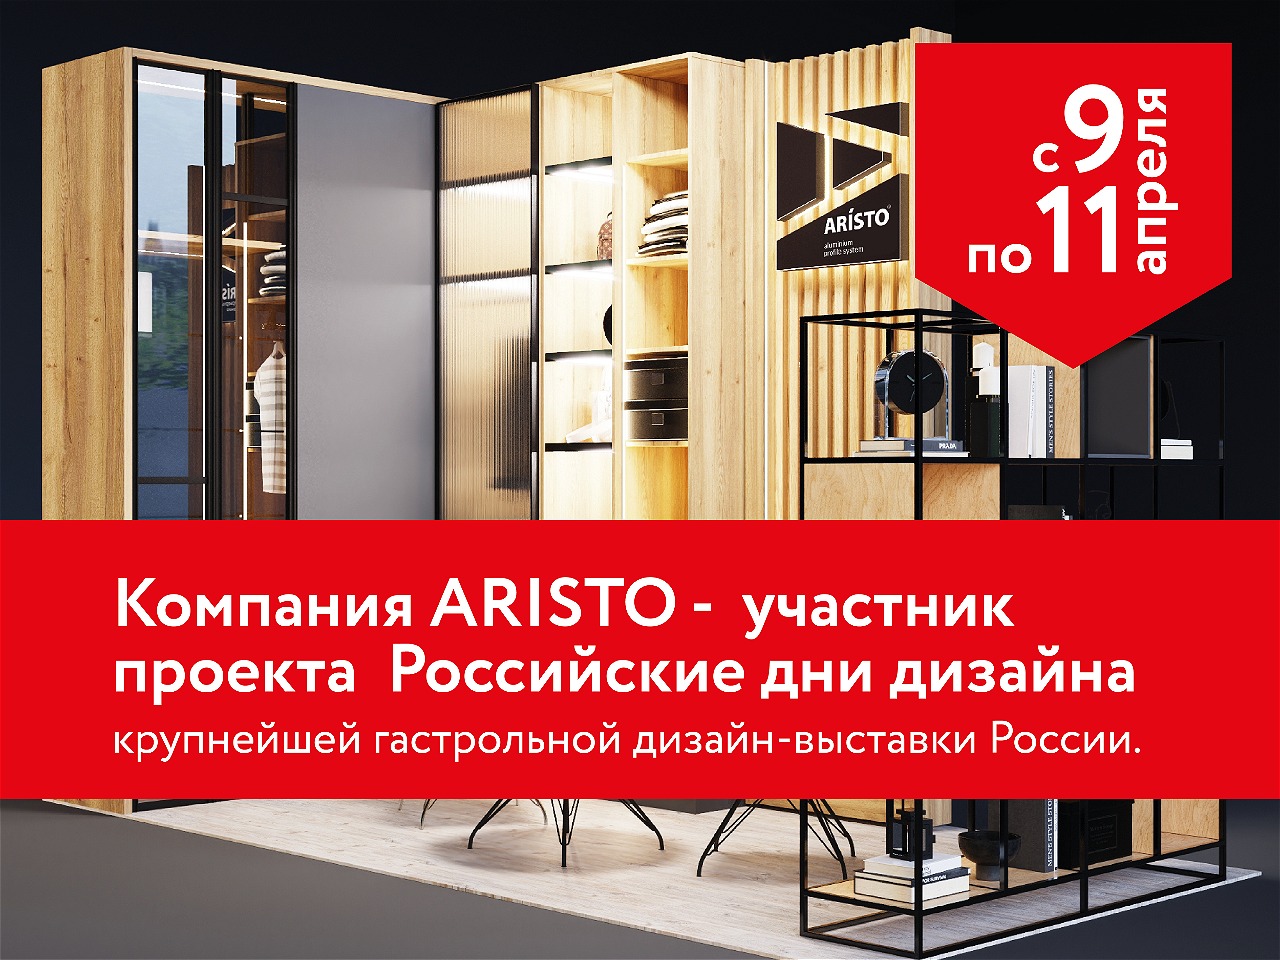 ARISTO – участник проекта Российские дни дизайна!